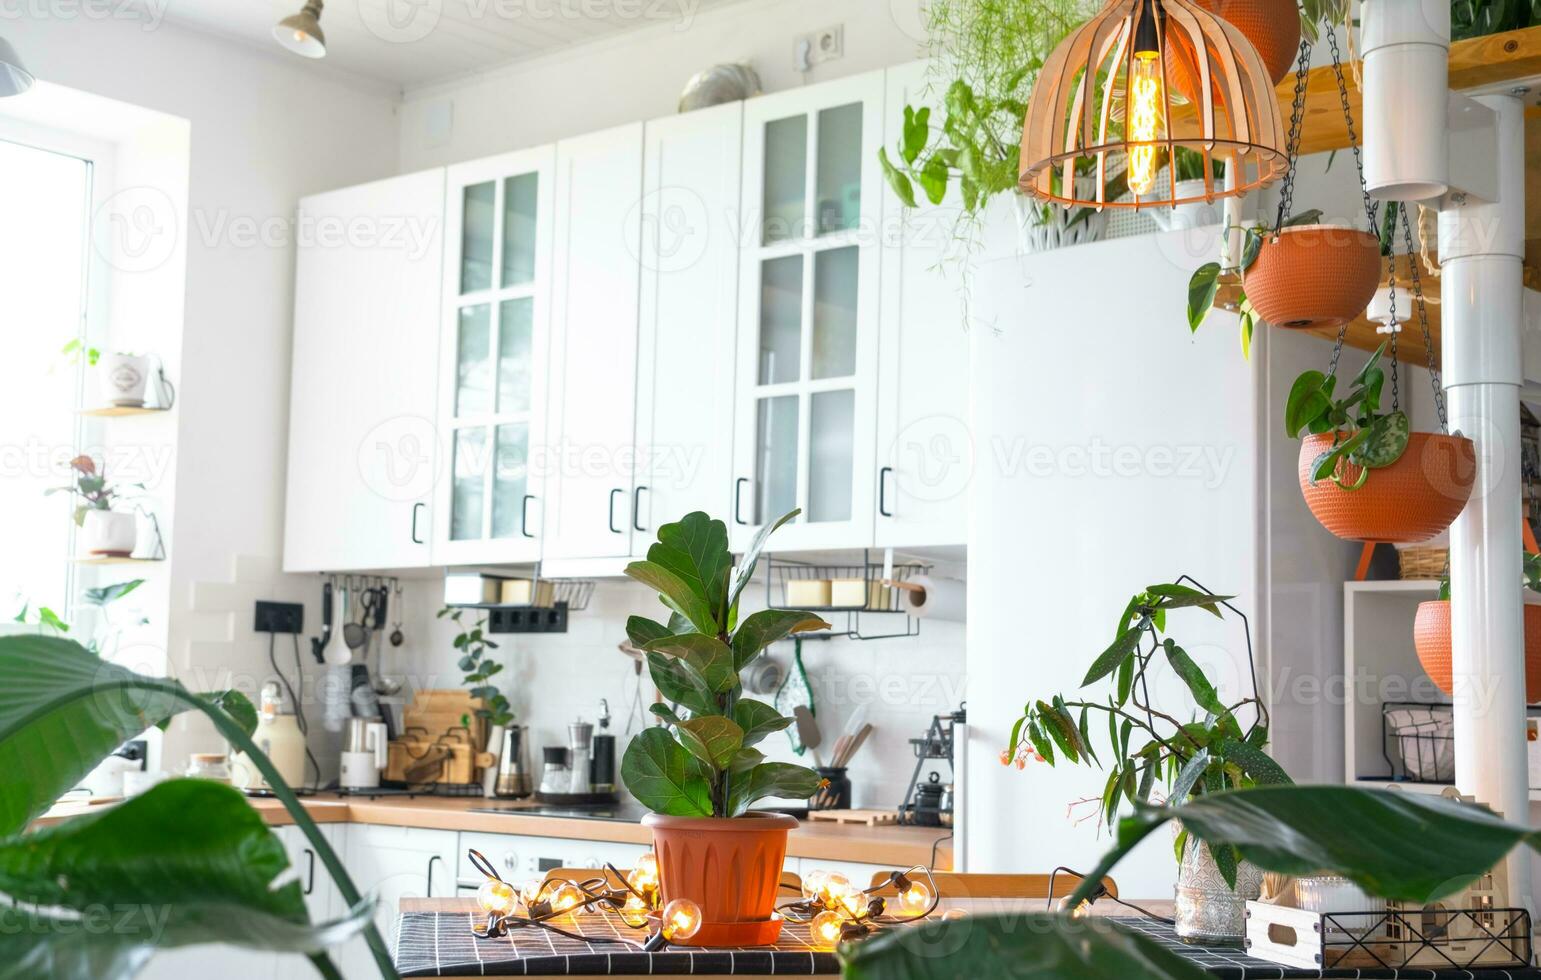 el general plan de un ligero blanco moderno rústico cocina con un modular metal escalera decorado con en conserva plantas. interior de un casa con plantas de casa foto